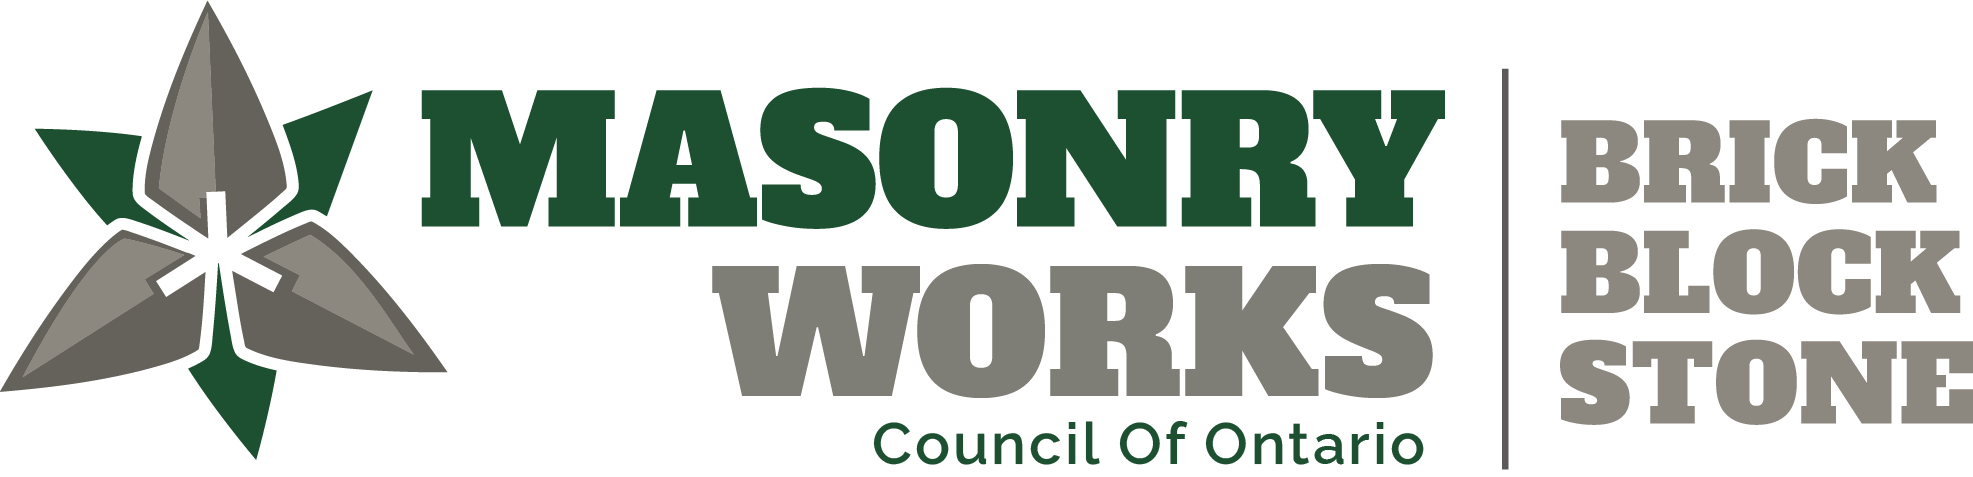 Masonry Works Logo Full.png